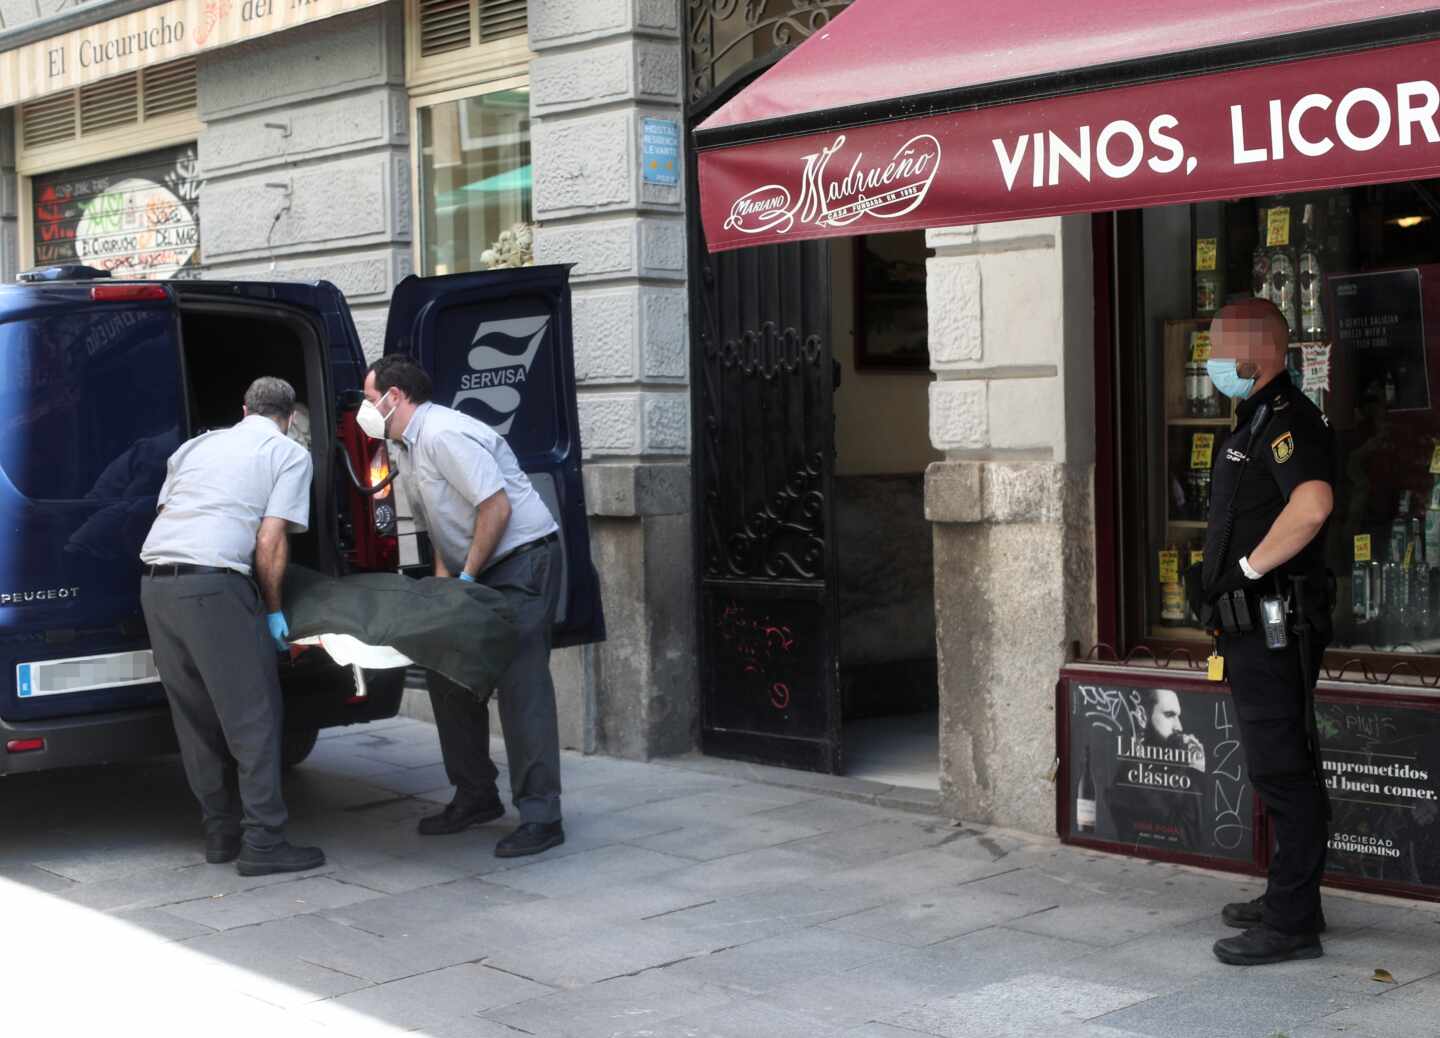 Una mujer se suicida tras matar a su hijo de 6 años en un hostal del centro de Madrid